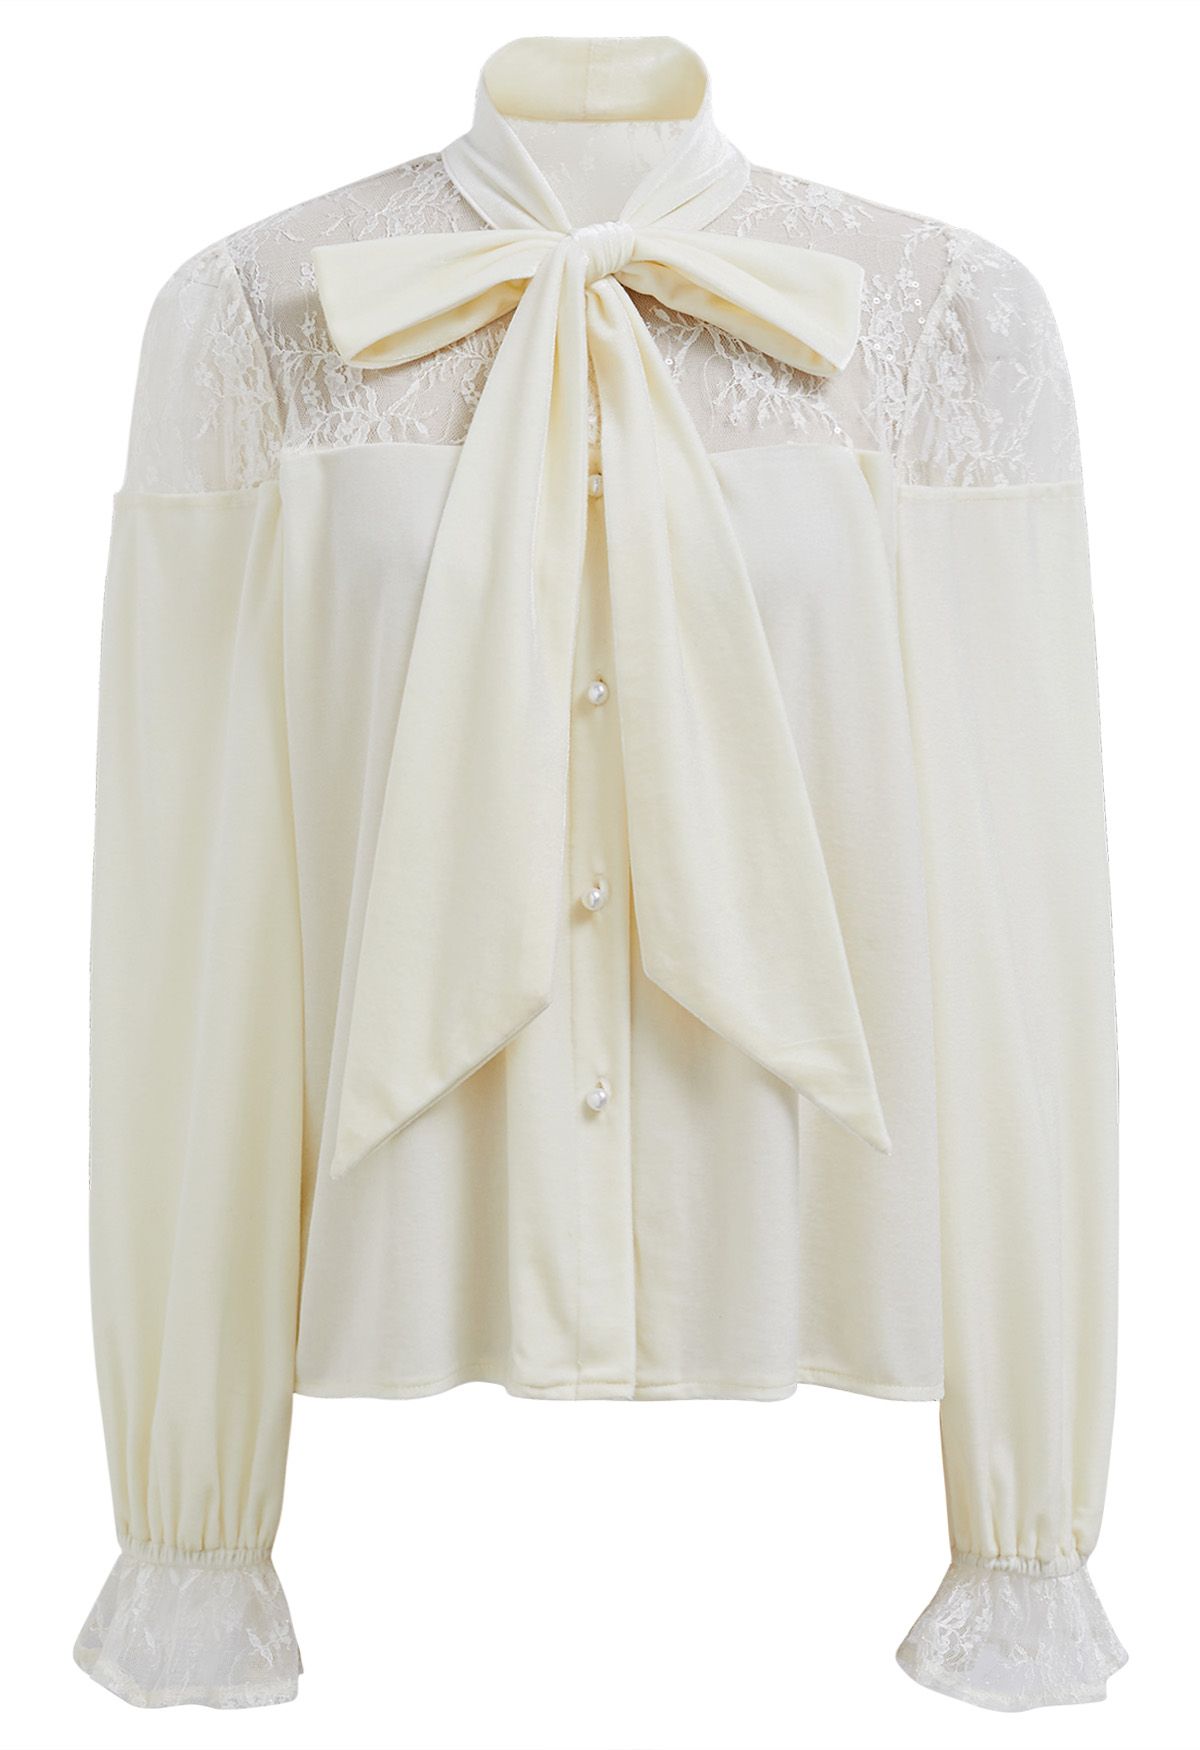 Camisa de terciopelo con lazo empalmado y encaje floral en color crema